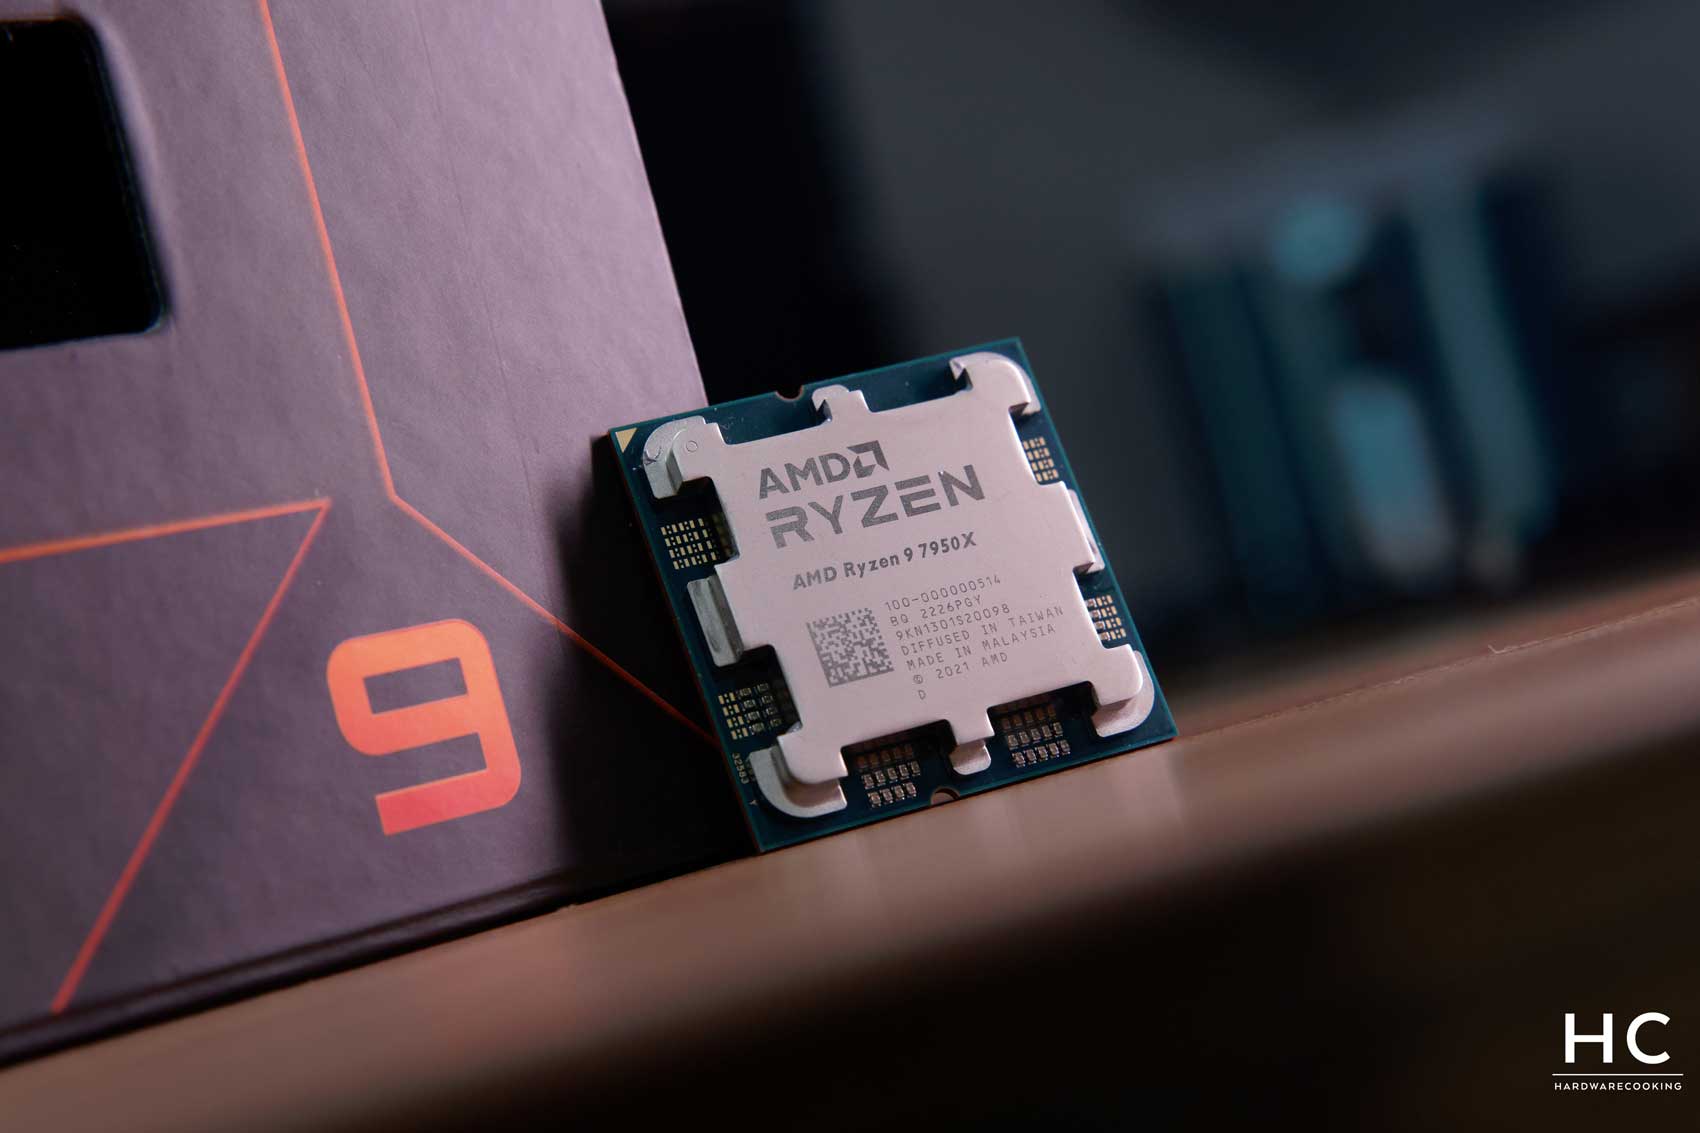 Amd ryzen threadripper 3990x processeur 2,9 ghz 32 mo last level cache -  pour Processeurs - Composants